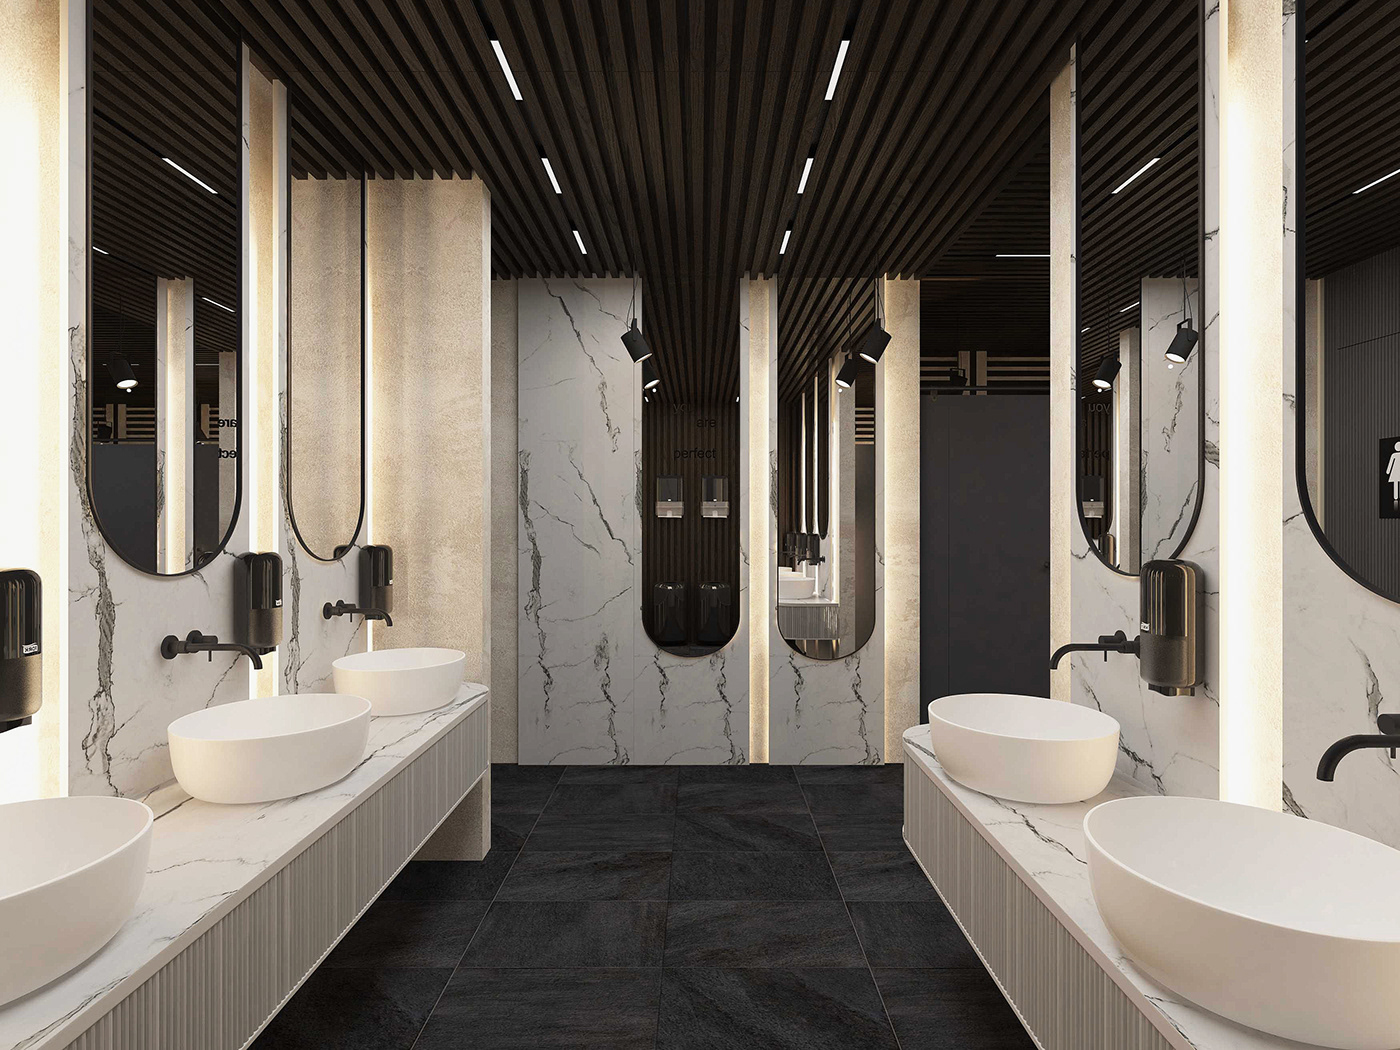 toilet public toilet interior design  3ds max PUBLIC PLACE architecture Interior Restroom Interior public toilet design Restroom Design